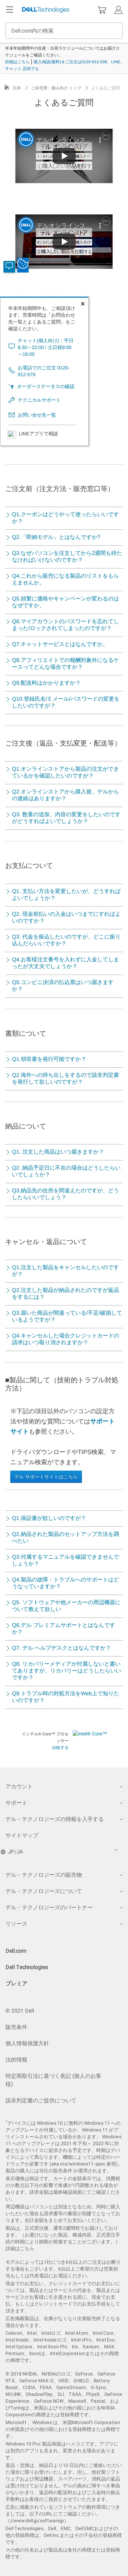 キャプチャ画面 会社名:デル株式会社プロジェクト名:DELL JAPAN(個人向け) 画面名:質問・Q&A デバイス名:SPカテゴリ:EC・オンラインショップタグ:SP,質問・Q&A